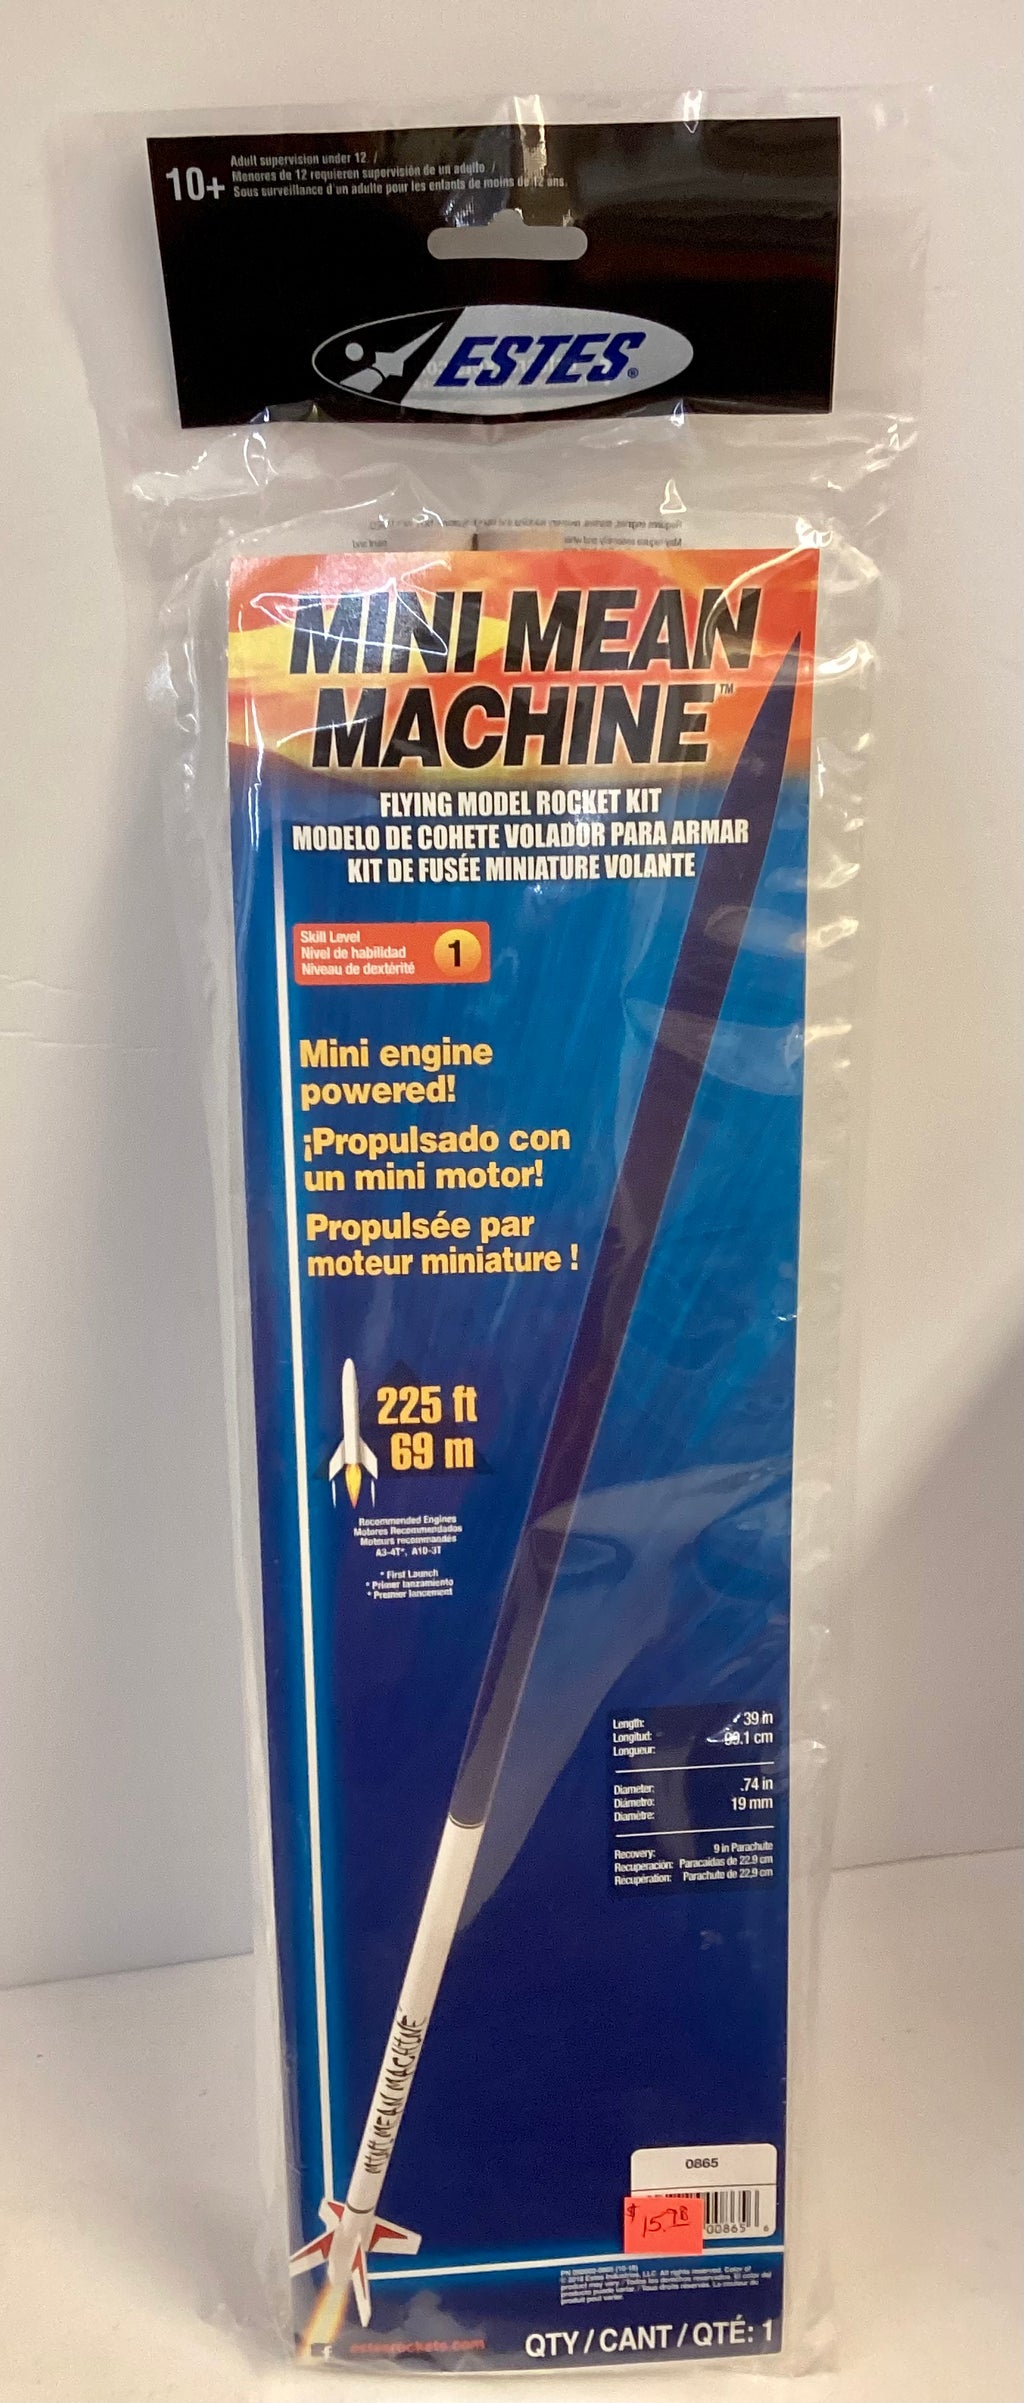 Estes Mini Mean Machine Kit # 0865